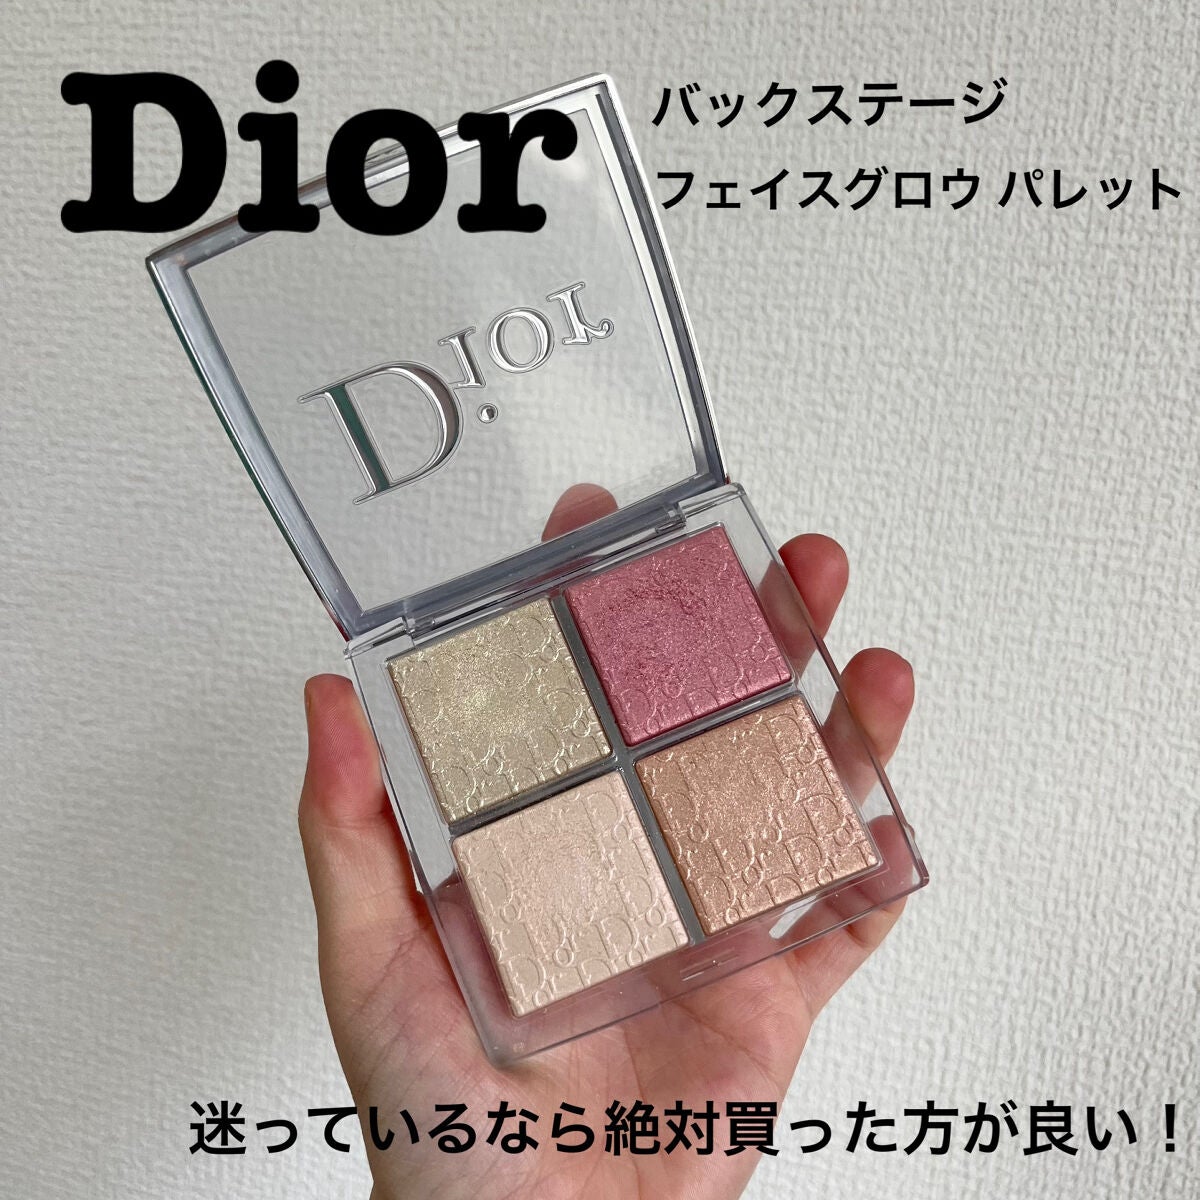 Dior ハイライトパレット